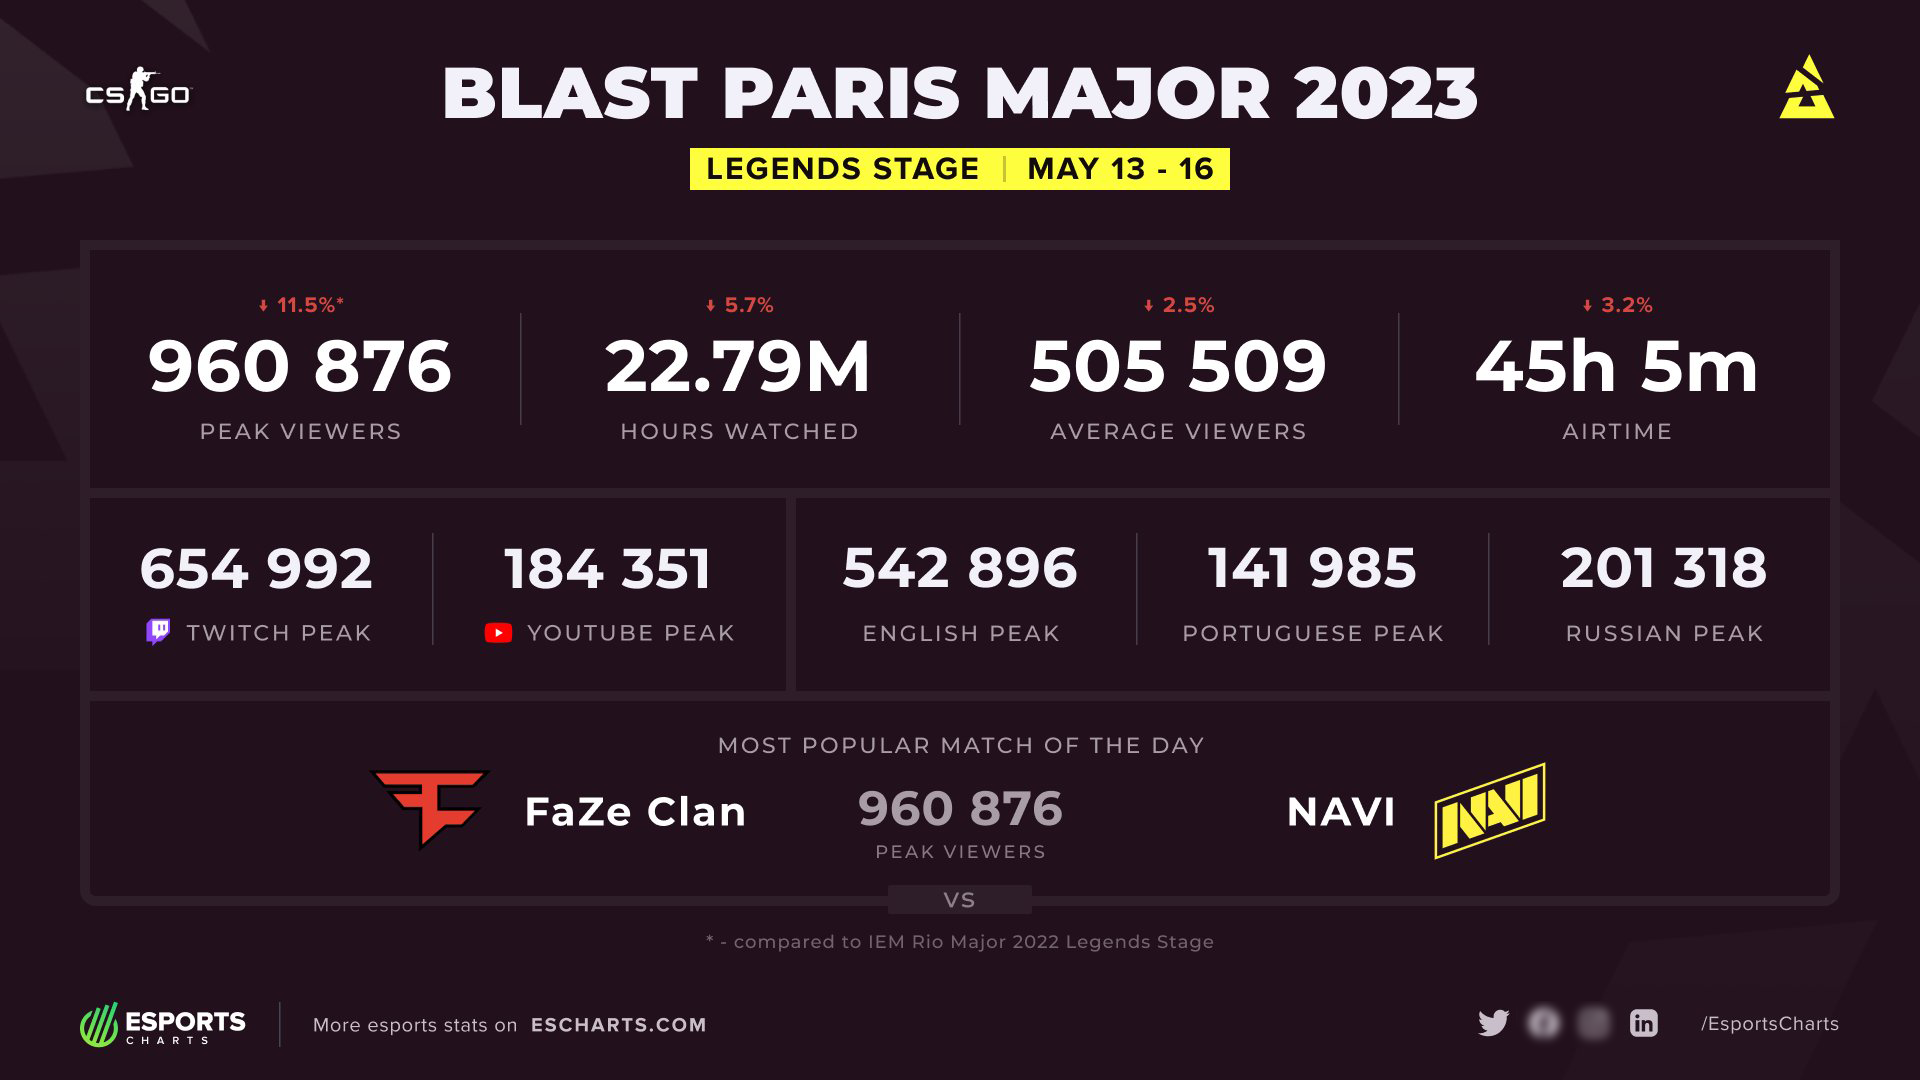 Турнир BLASTtv Paris Major 2023 является одной из самых престижных и значимых соревнований в мире киберспорта. Благодаря грамотной организации и помощи главного спонсора, компании Blizzard, на этапе легенд будут сыграны эпичные матчи, которые смогут заинтересовать как профессиональных игроков, так и обычных любителей csgo.